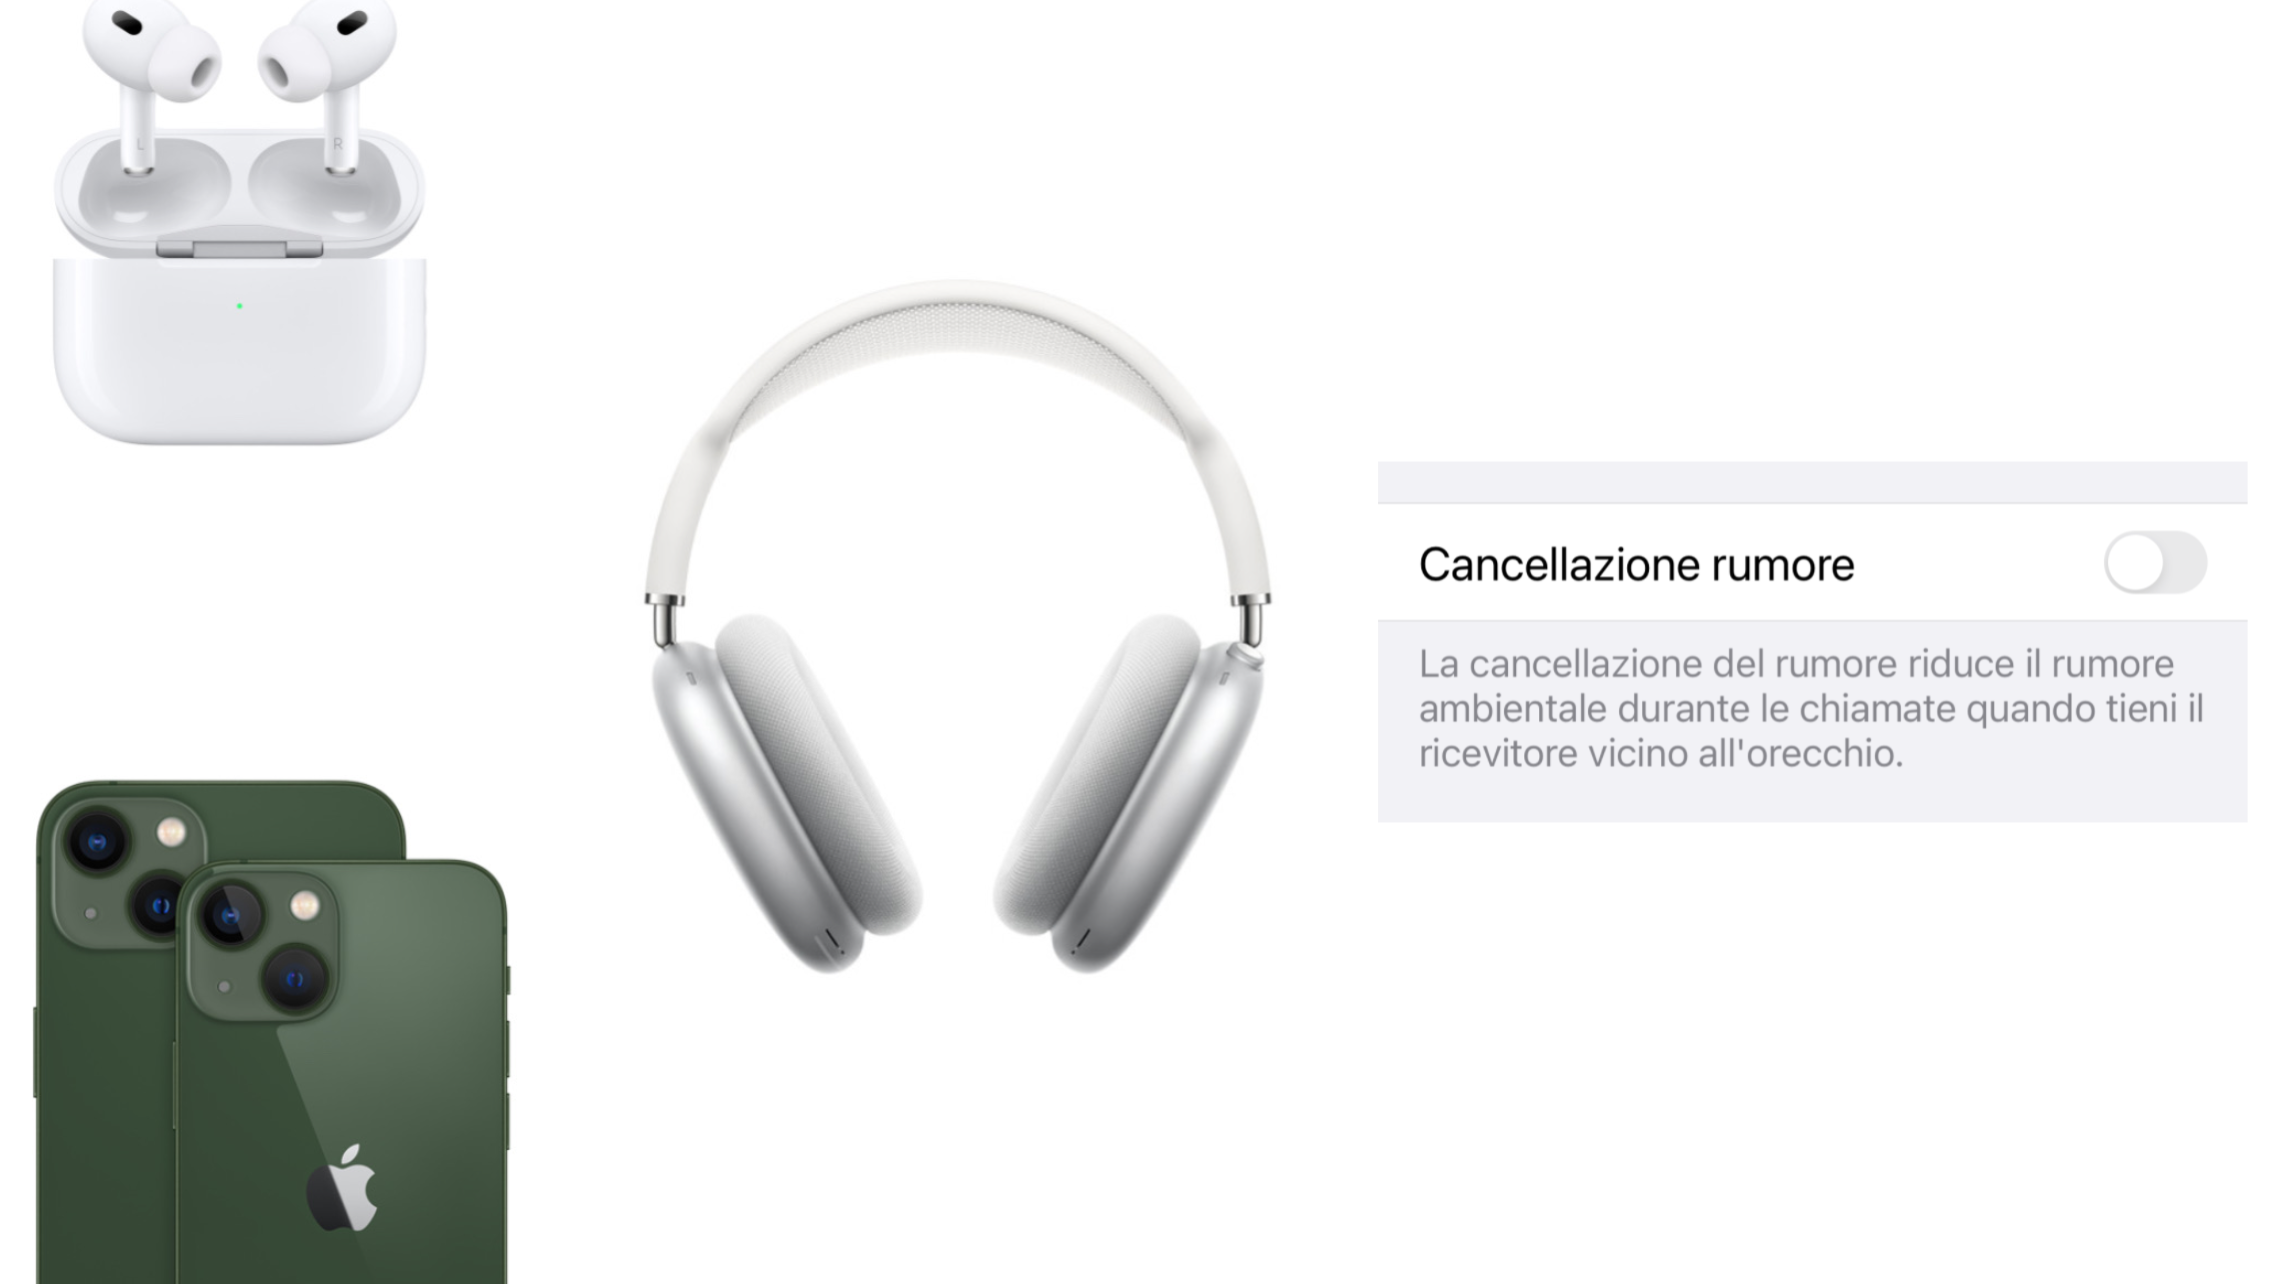 Apple cancellazione attiva del rumore